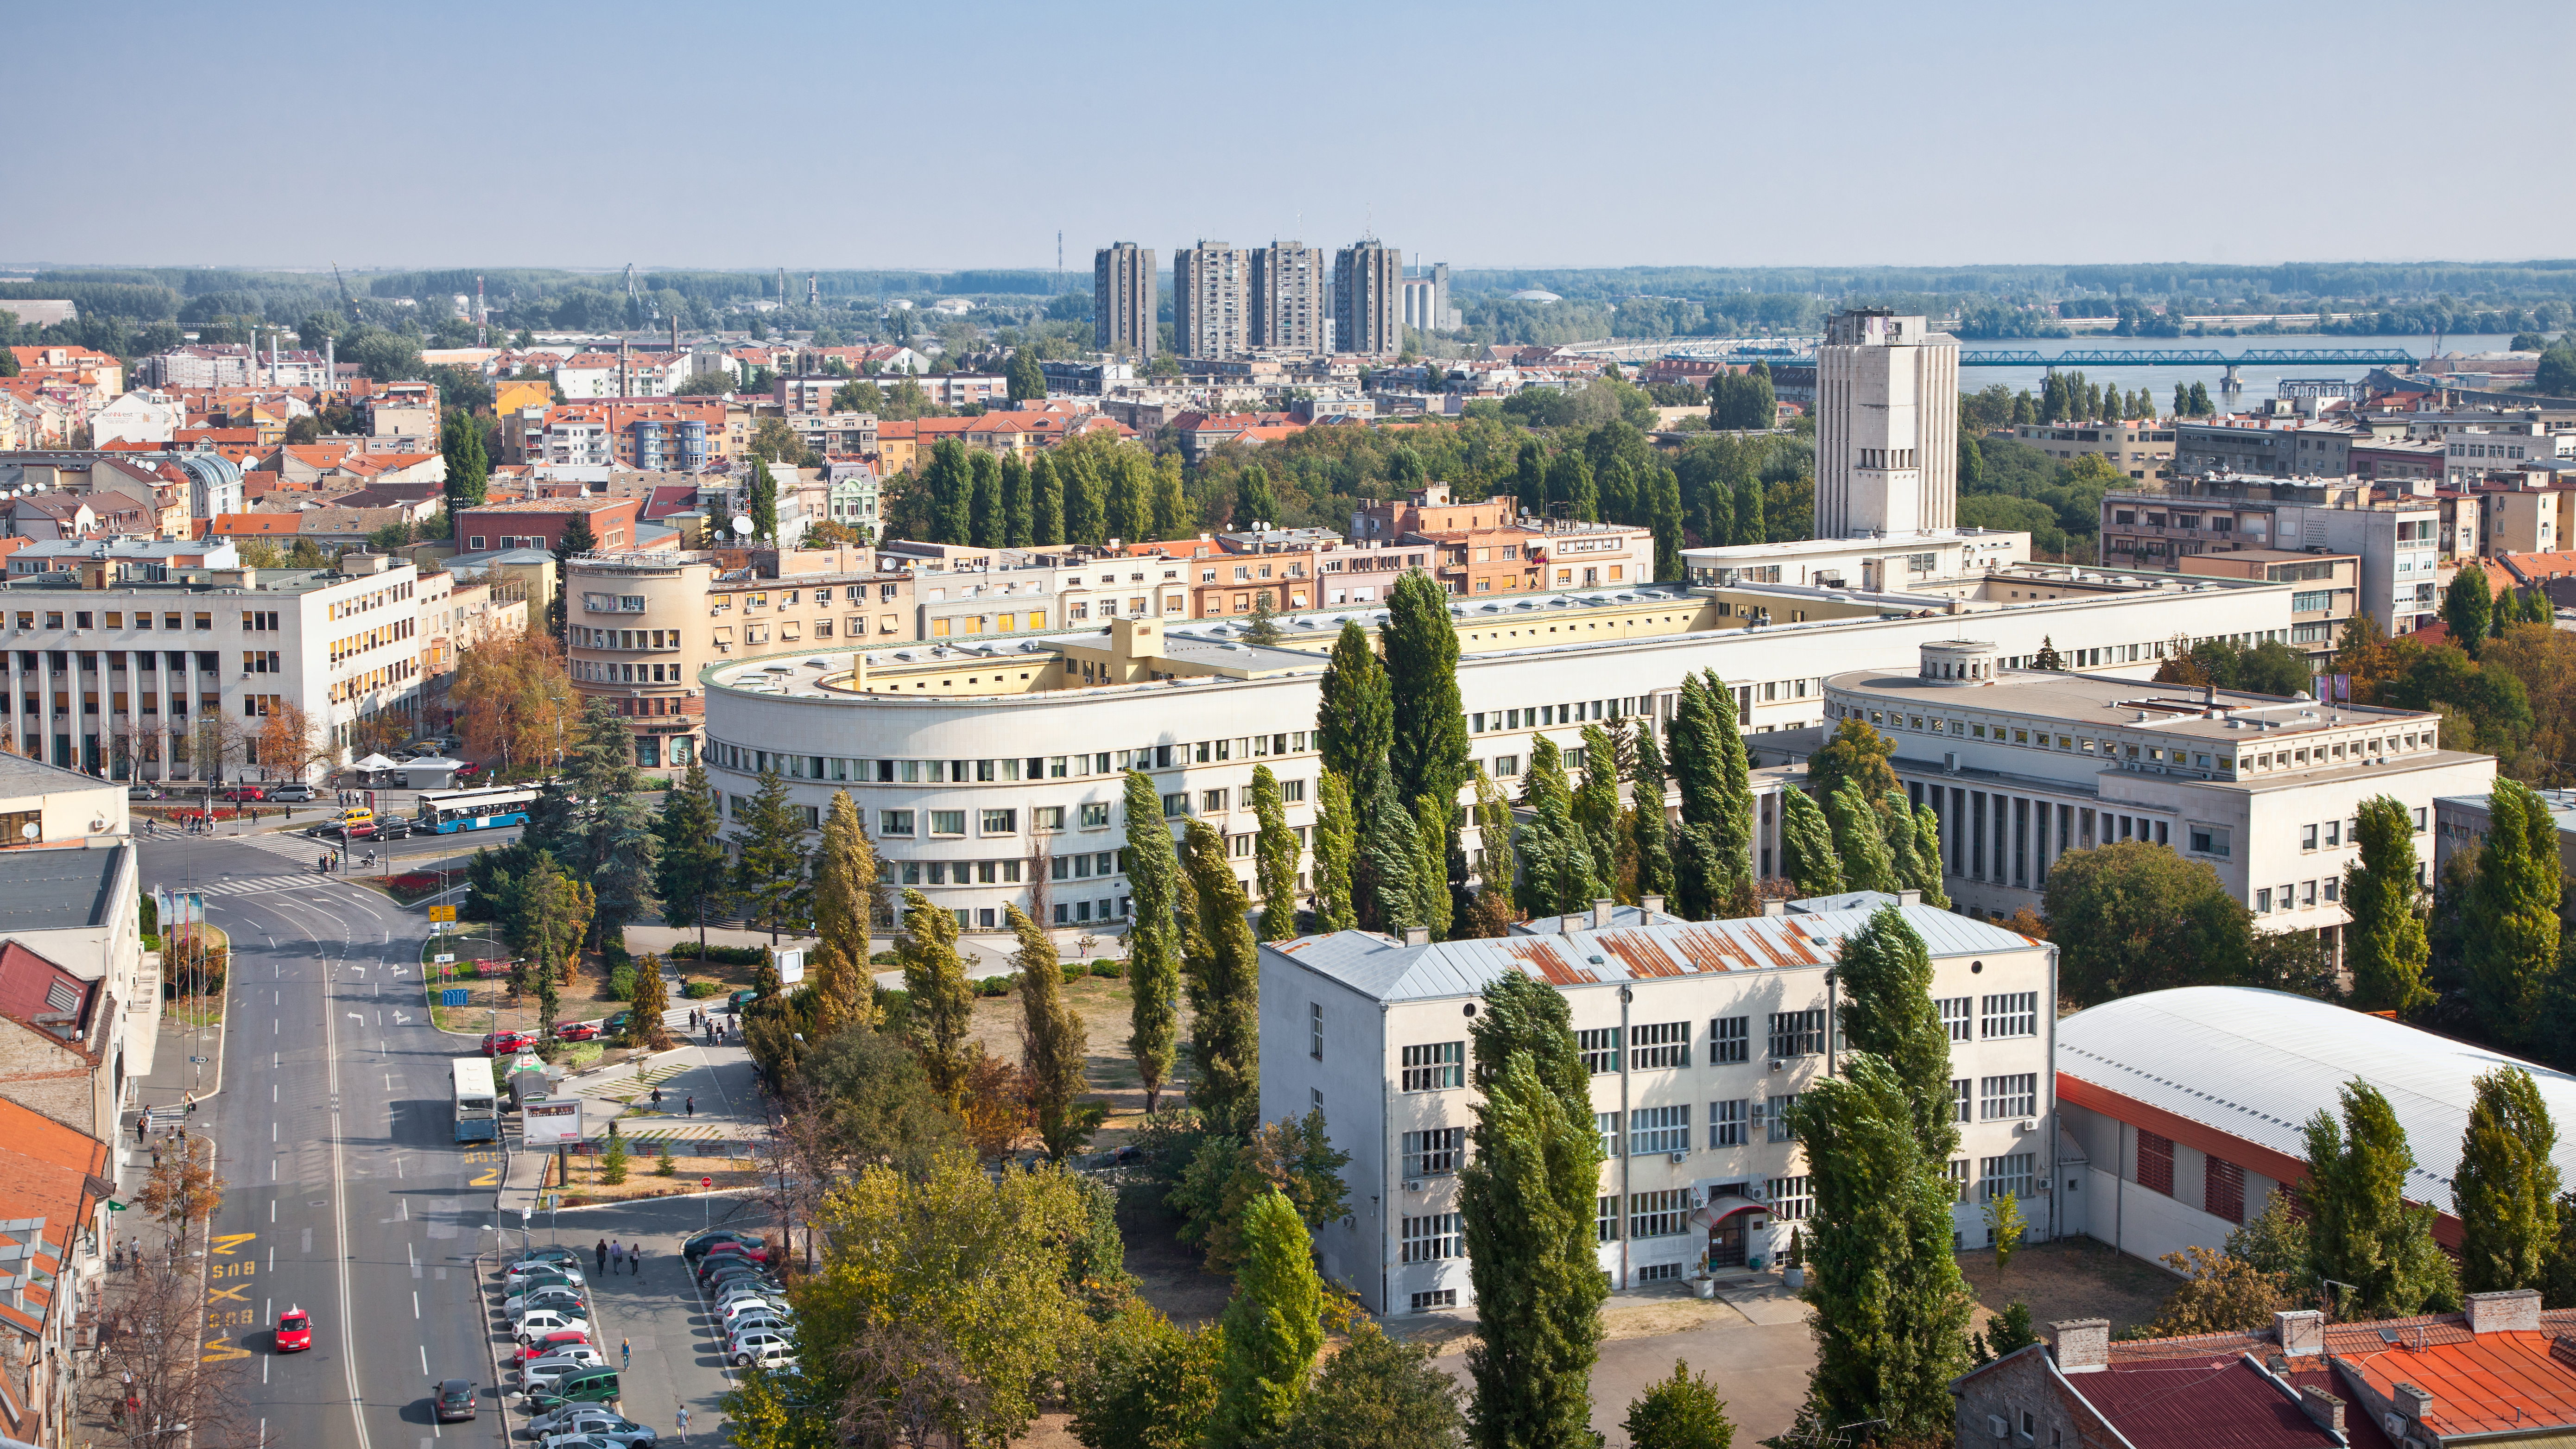 Нови Сад в Сербии, где жилье могут купить иностранцы